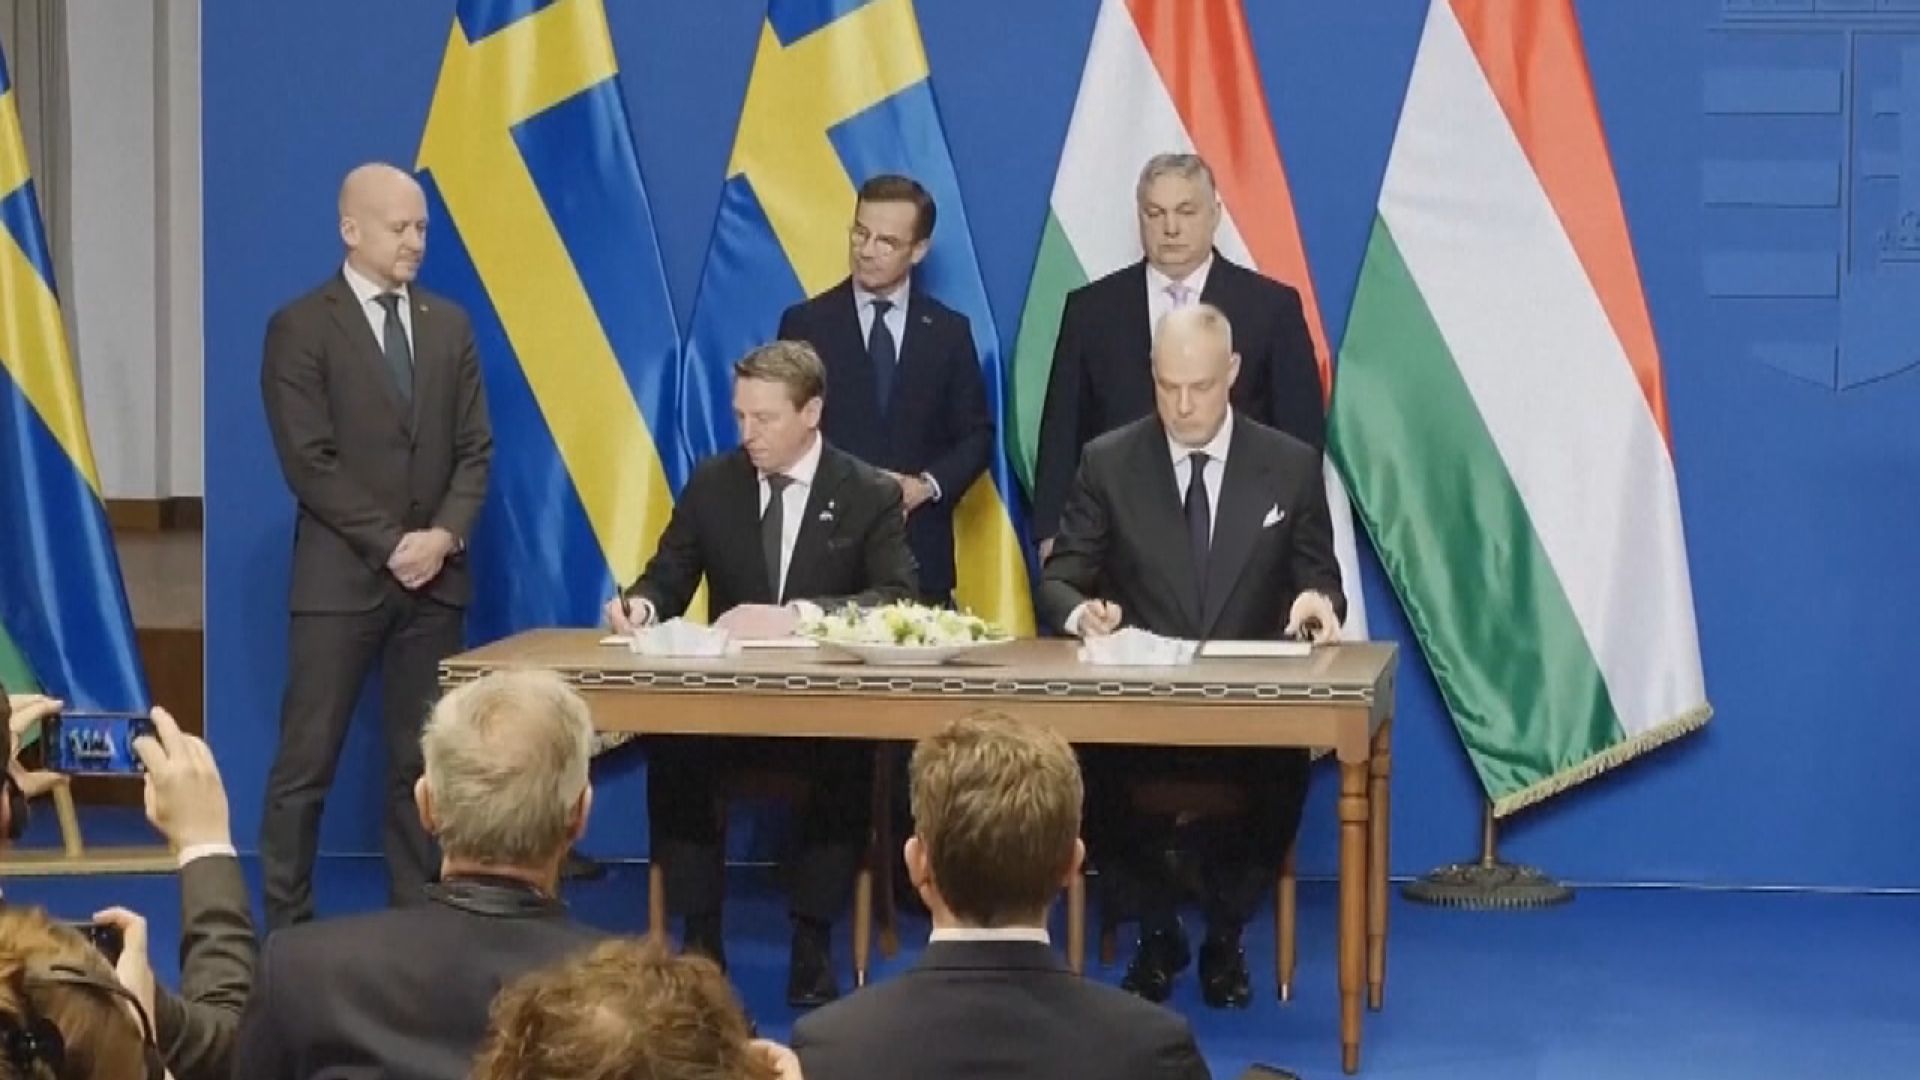 瑞典與匈牙利簽署防衛協議 歐爾班稱將助重建互信